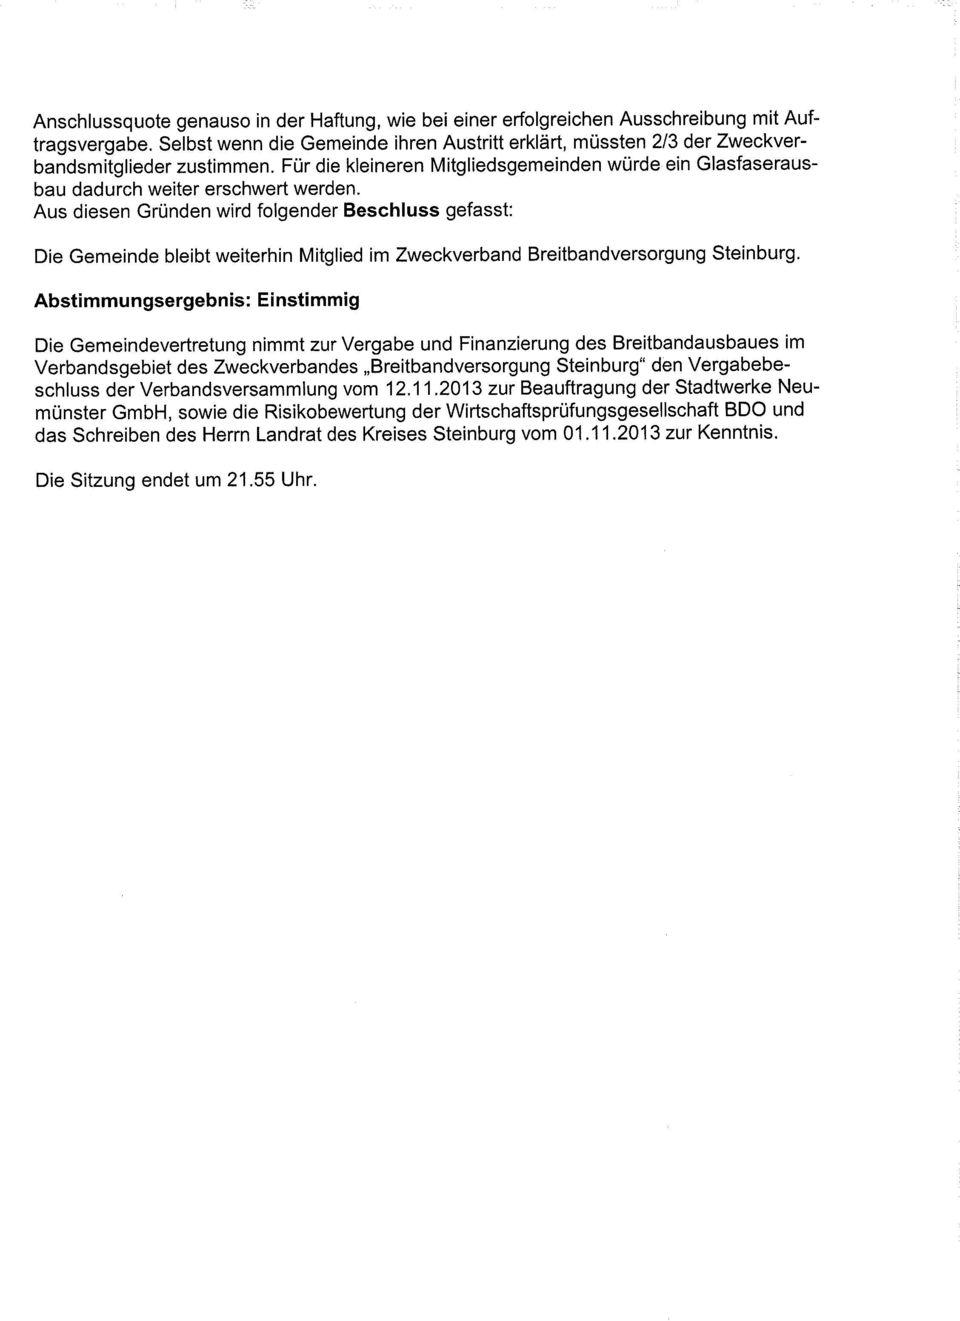 Aus diesen Gründen wird folgender Beschluss gefasst: Die Gemeinde bleibt weiterhin Mitglied im Zweckverband Breitbandversorgung Steinburg.